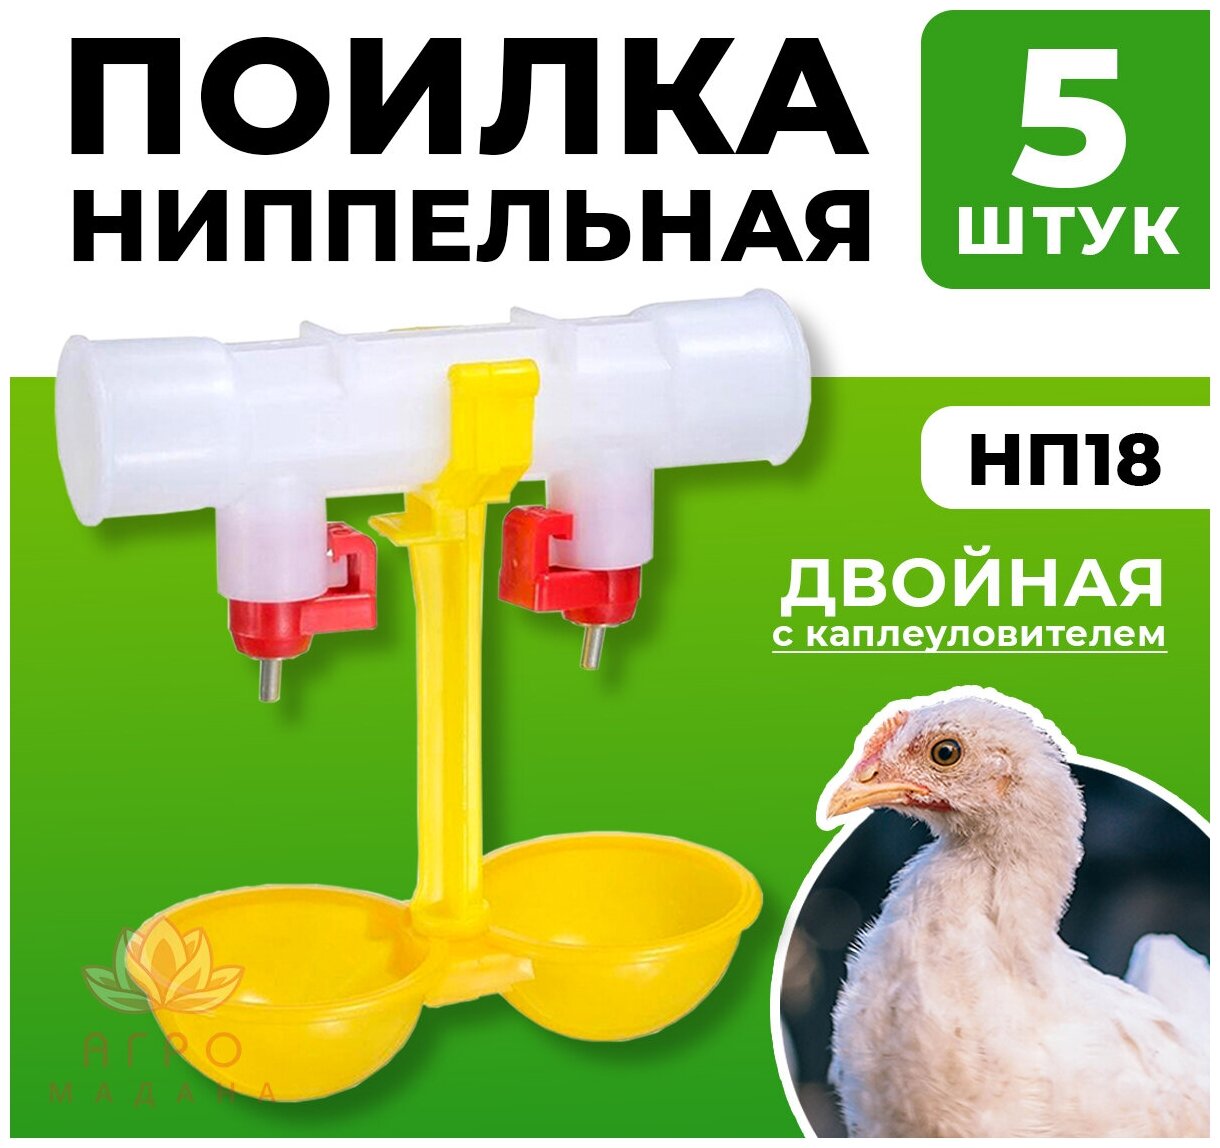 5шт Двойная ниппельная поилка НП18 на 360 градусов для птиц / Ниппельная автопоилка для курицы, для птицы, для перепелов, для цыплят - фотография № 1